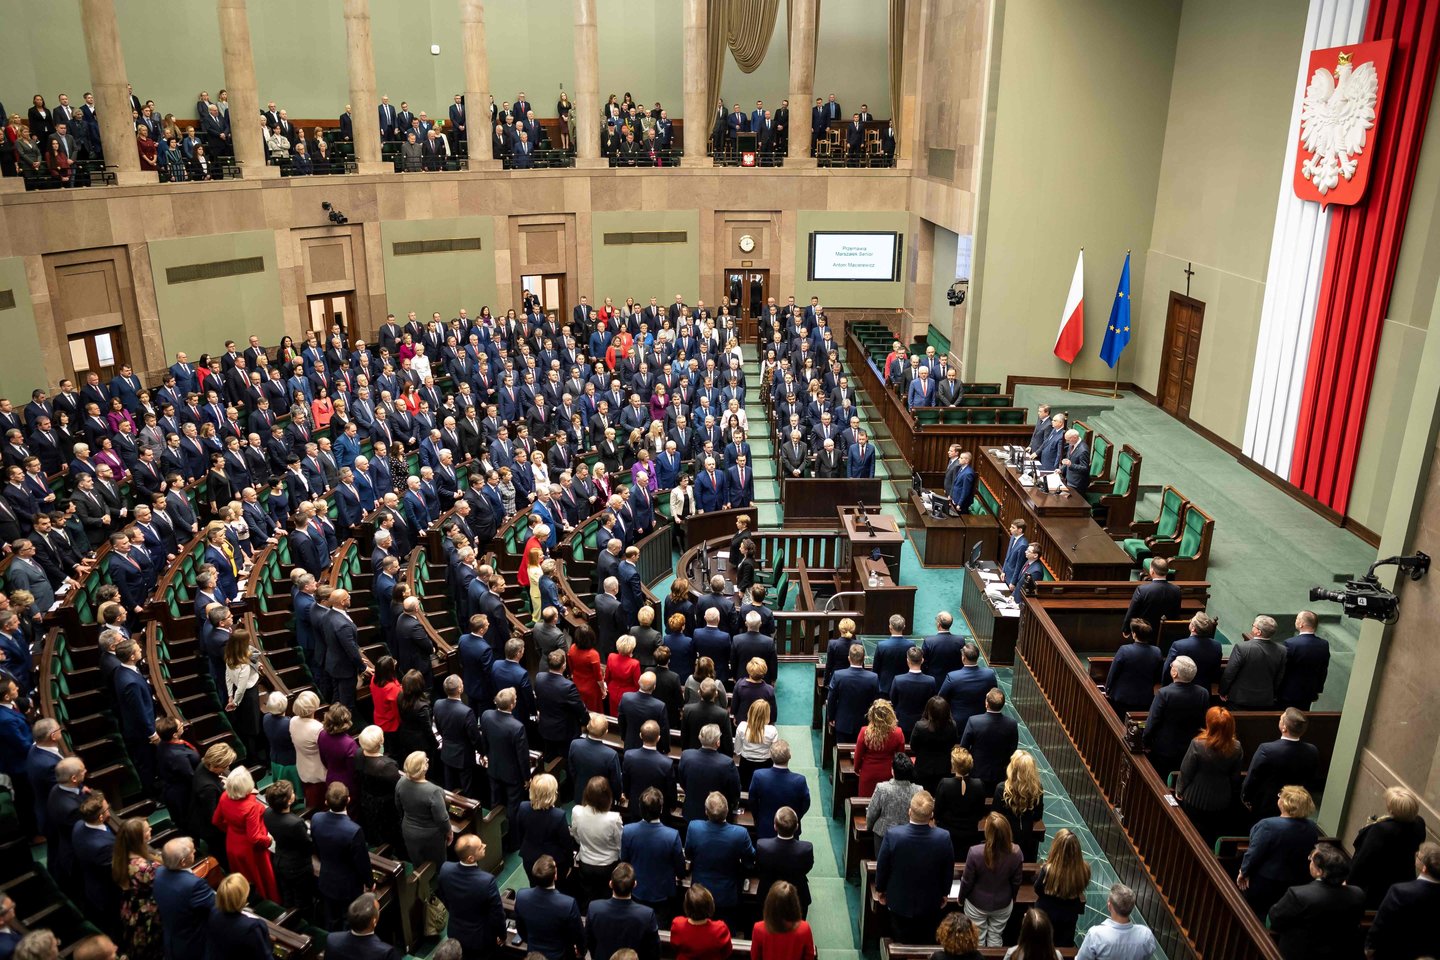 Vakar įvyko pirmasis Lenkijos Seimo posėdis, tartasi, kas taps Senato pirmininku. O pirmadienį minėtos Lenkijos nepriklausomybės atgavimo 101-osios metinės.<br>AFP/Scanpix nuotr.